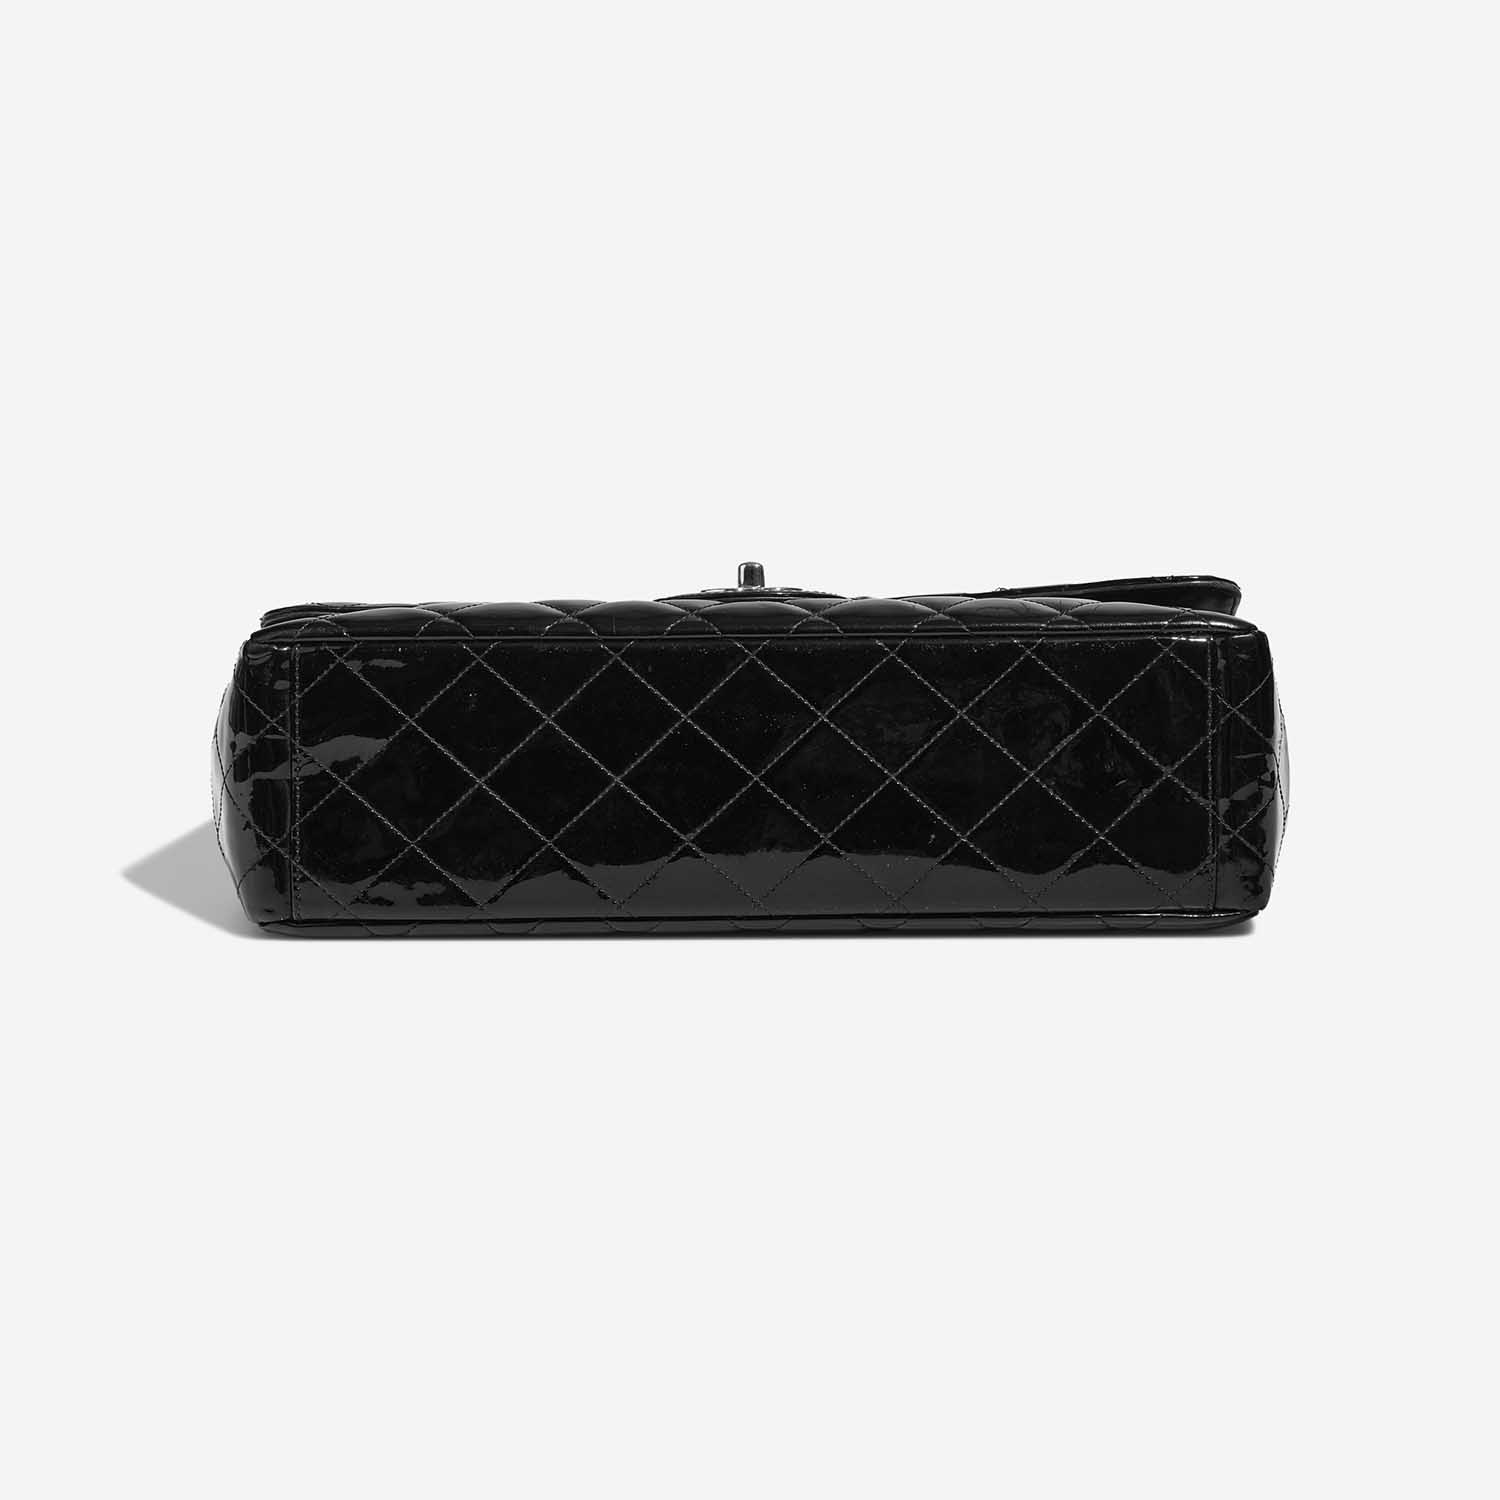 Chanel Timeless Maxi Black Bottom | Verkaufen Sie Ihre Designer-Tasche auf Saclab.com